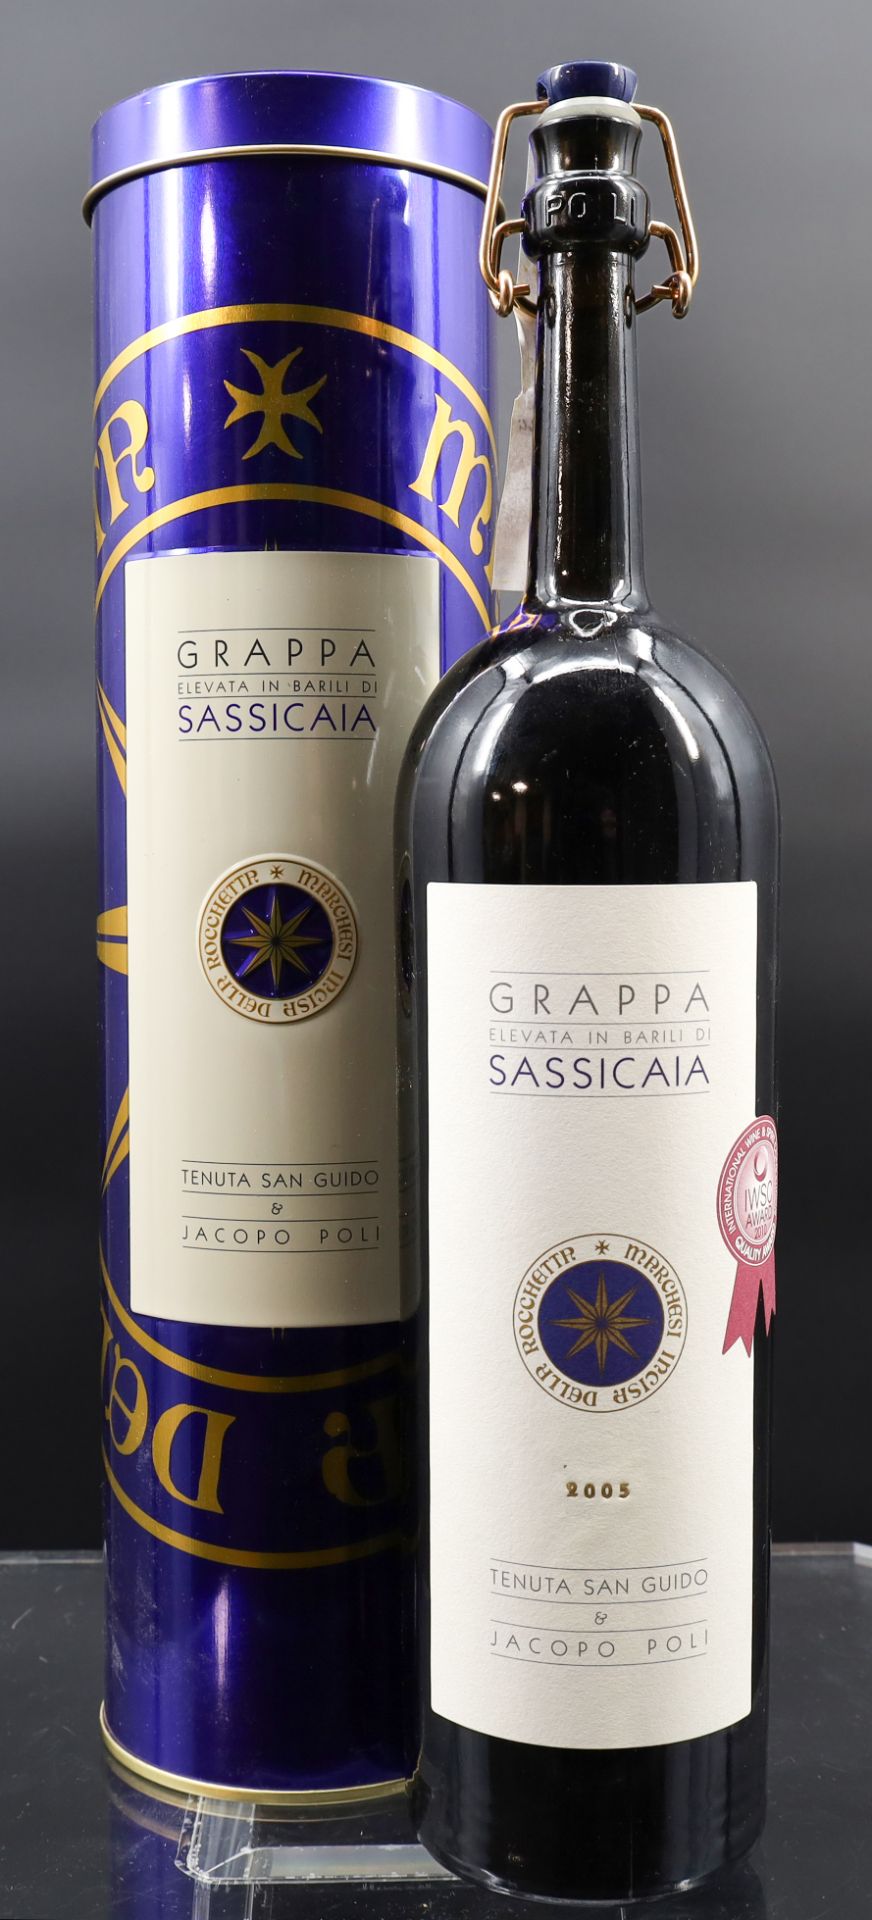 1 Flasche Grappa. ‘Elevata in Barrels of Sassicaia. North-Italy. 2005.